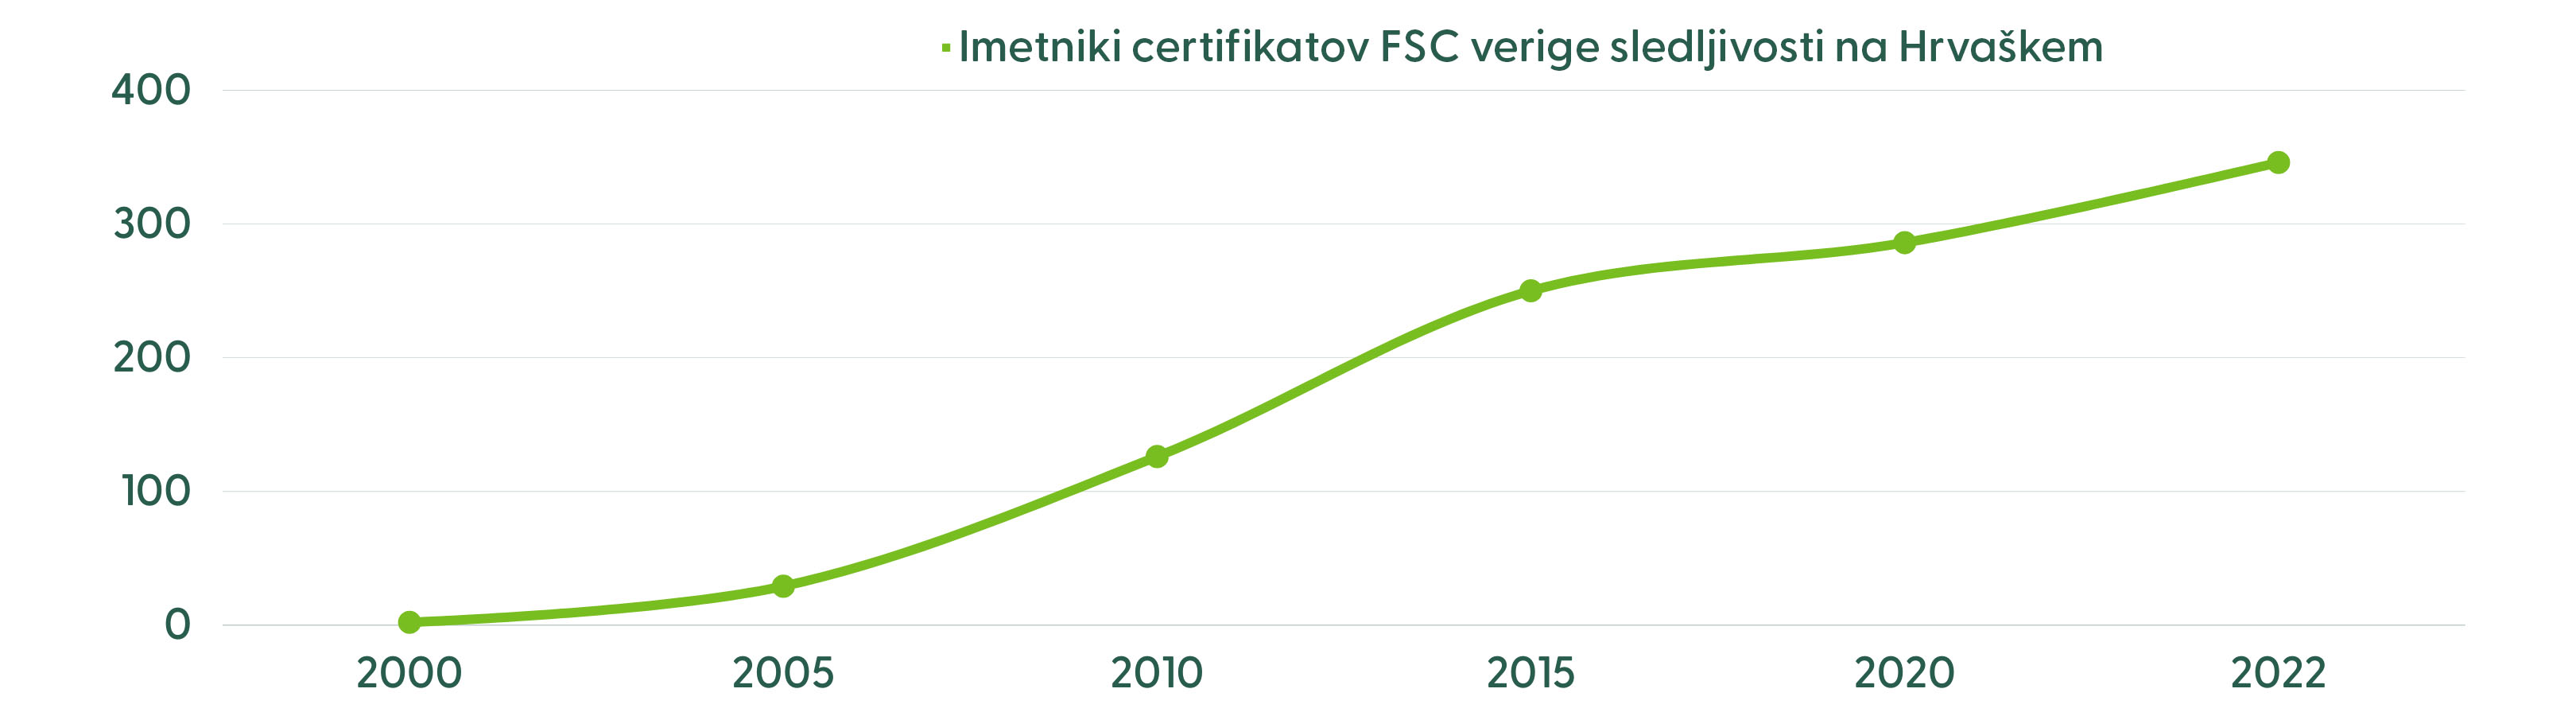 FSC CoC Croatia growth